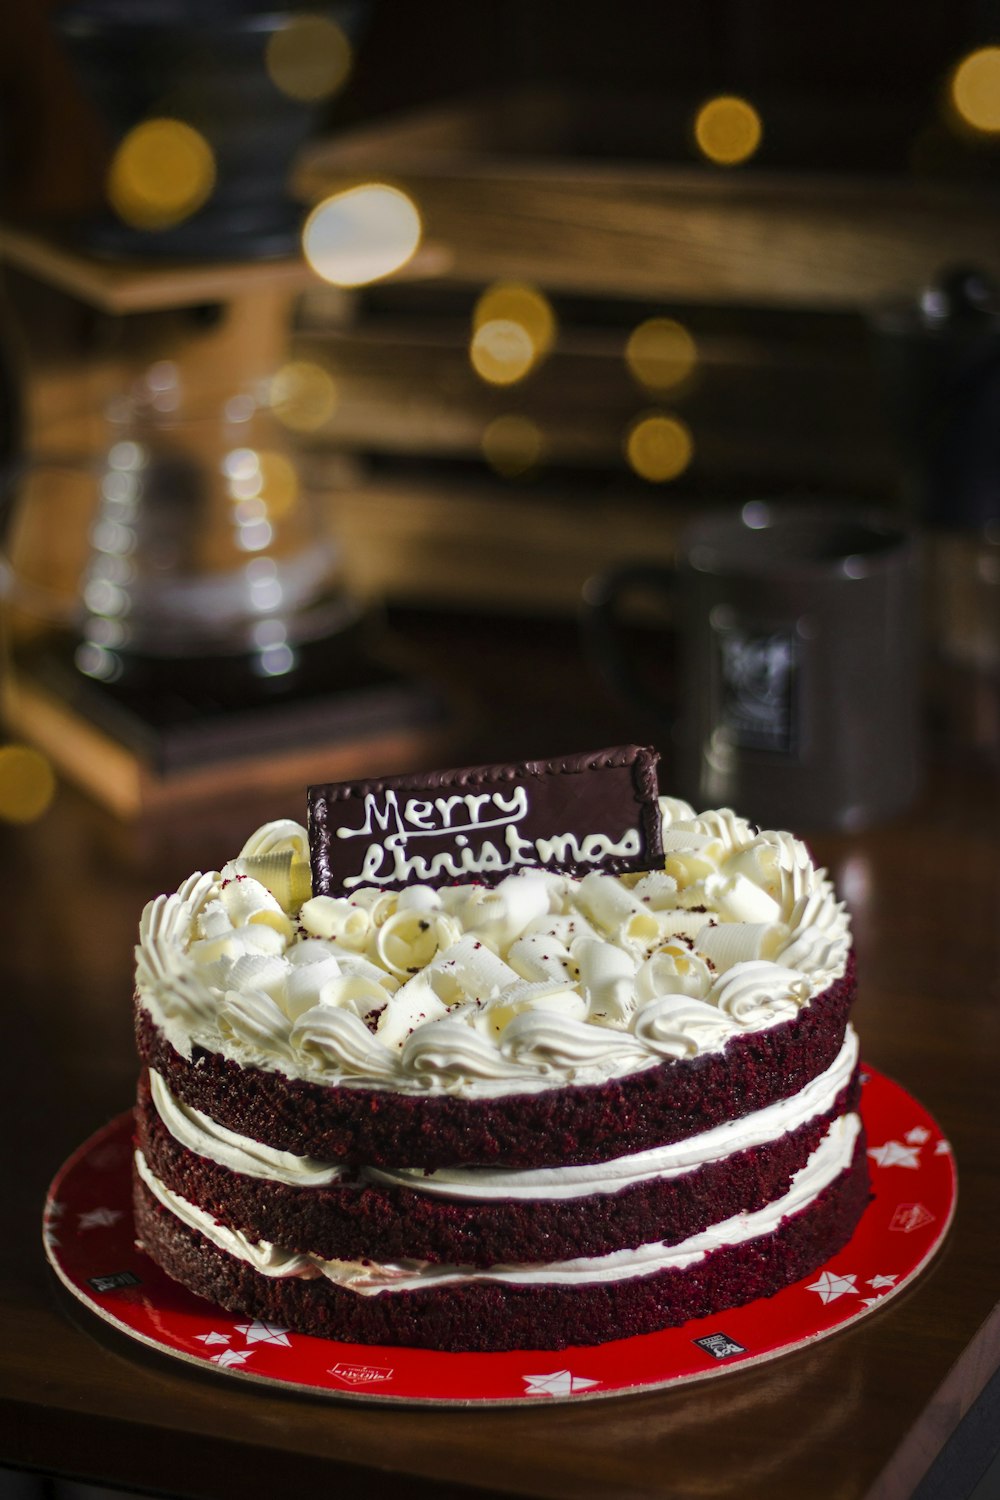 Merry Christmas chocolate cake on table